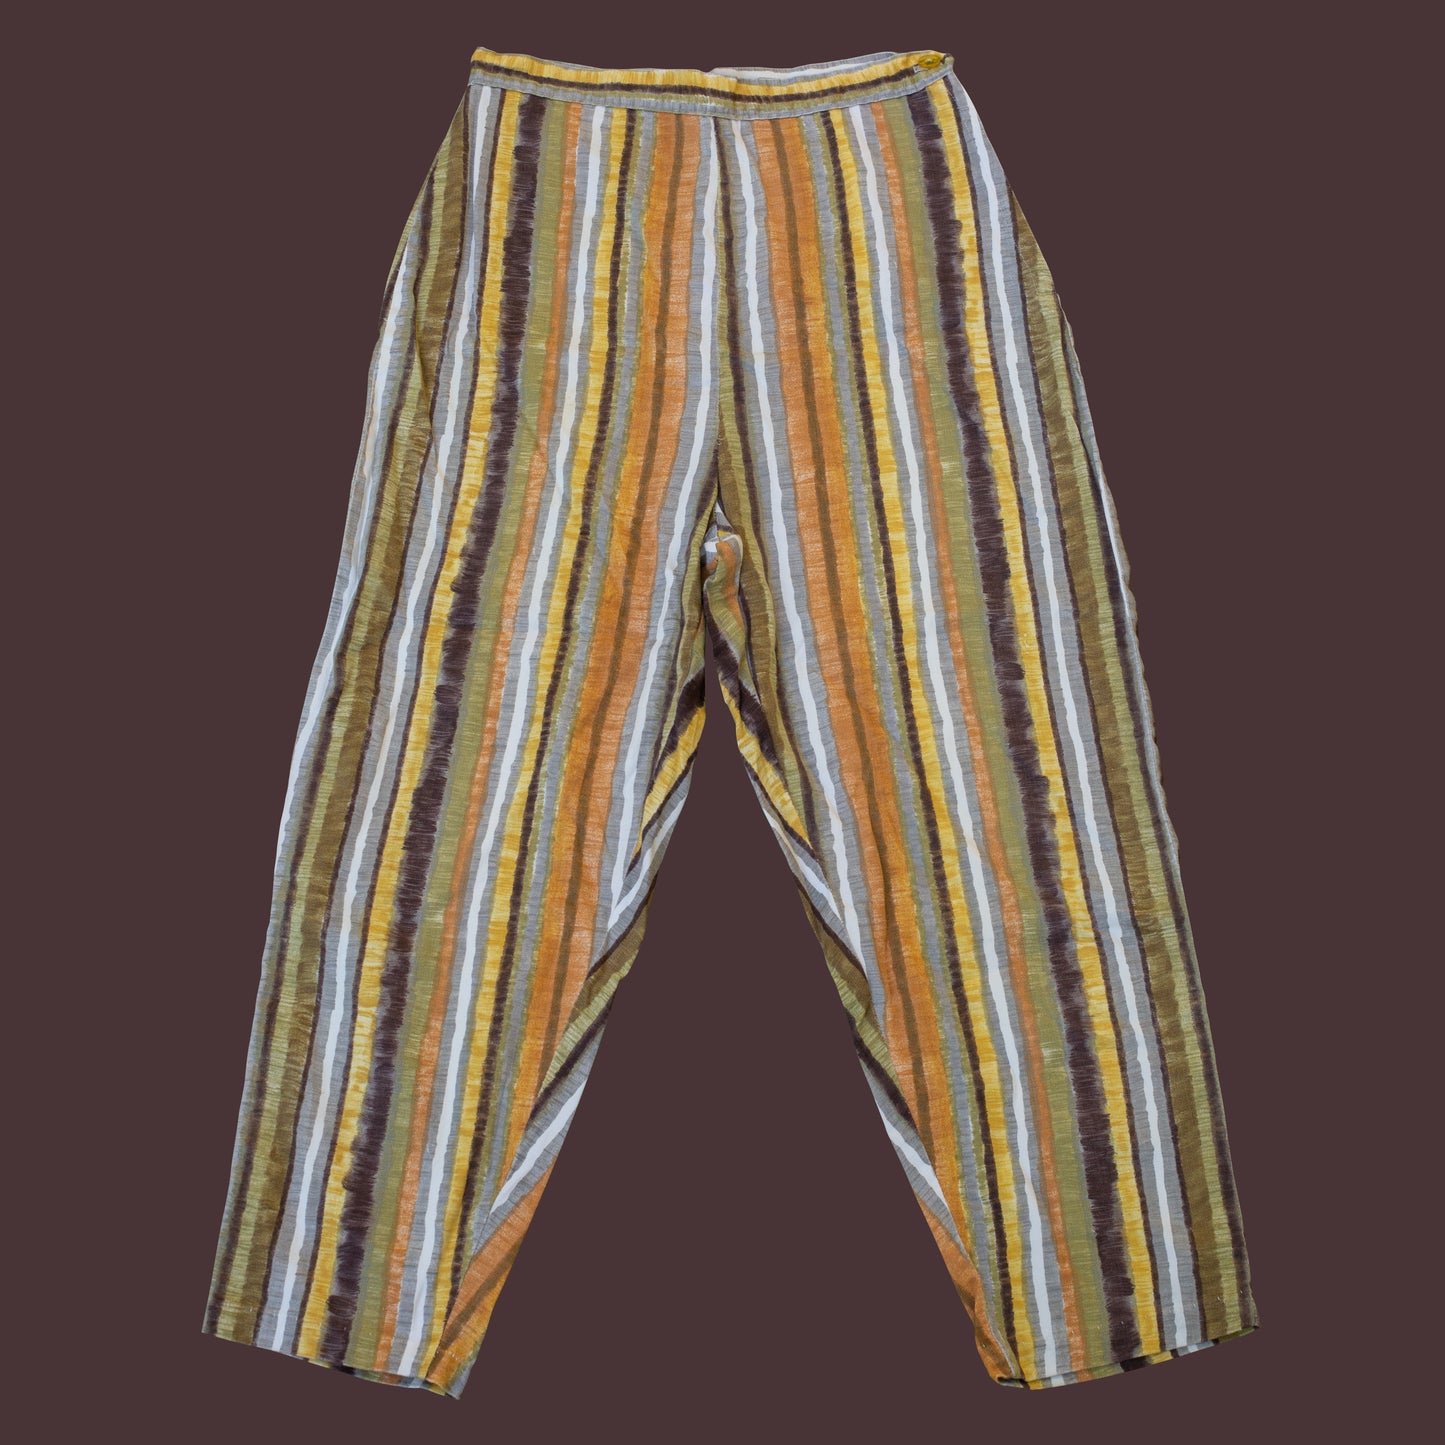 Vintage 1950s Striped Cotton Side Zip Cigarette Pants 26" Waist